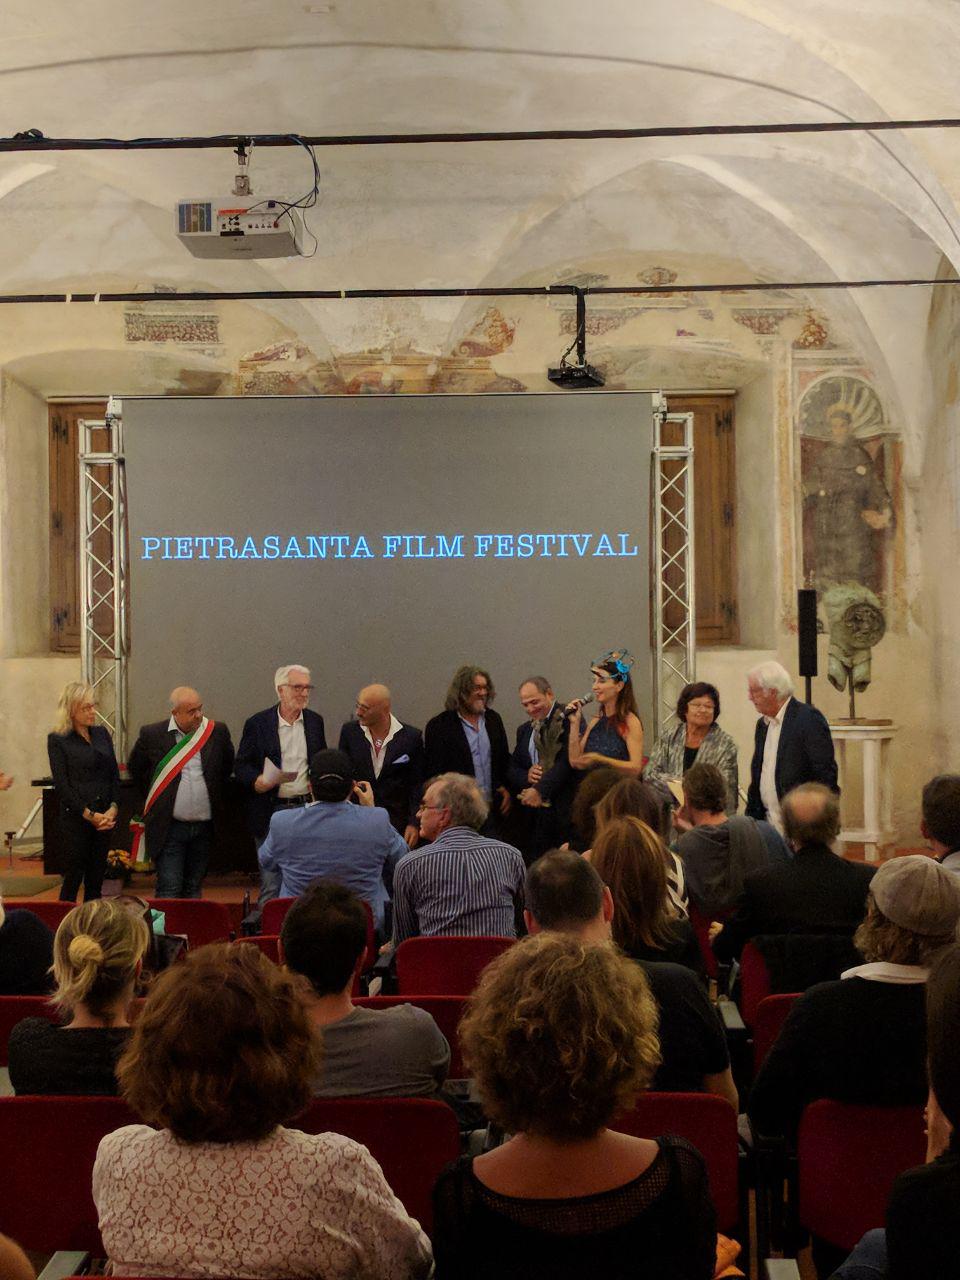 Tanti applausi per il Pietrasanta Film Festival, premiati otto corti internazionali